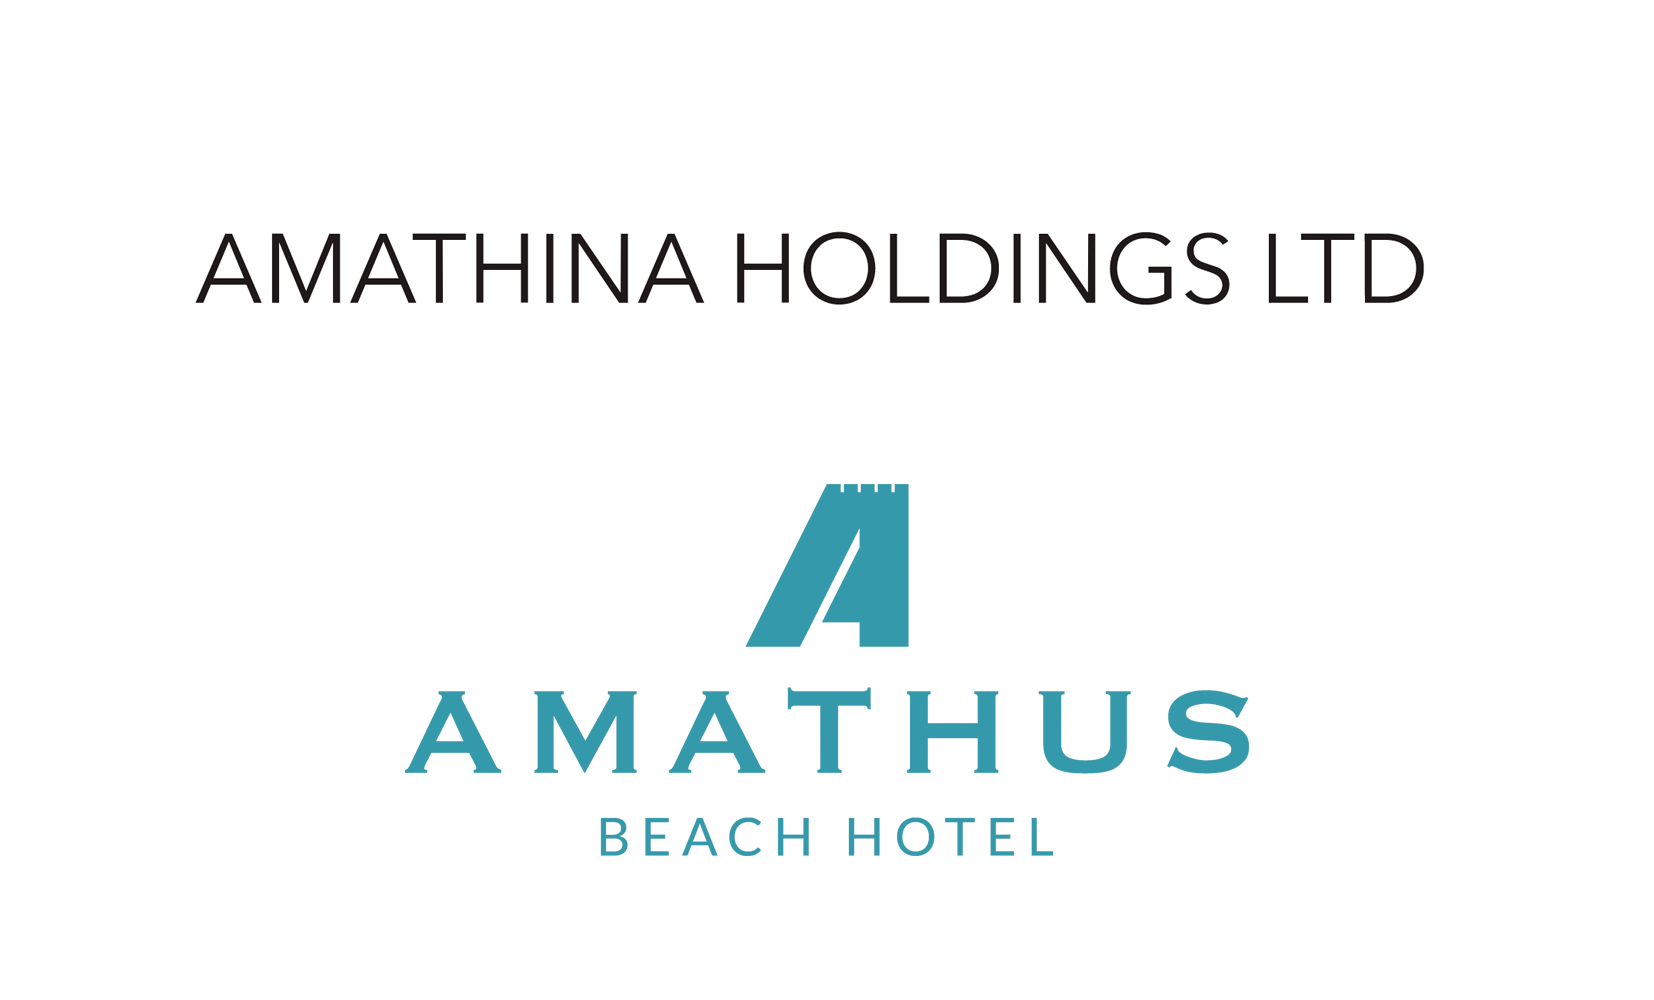 AMATHINA HOLDINGS LTD